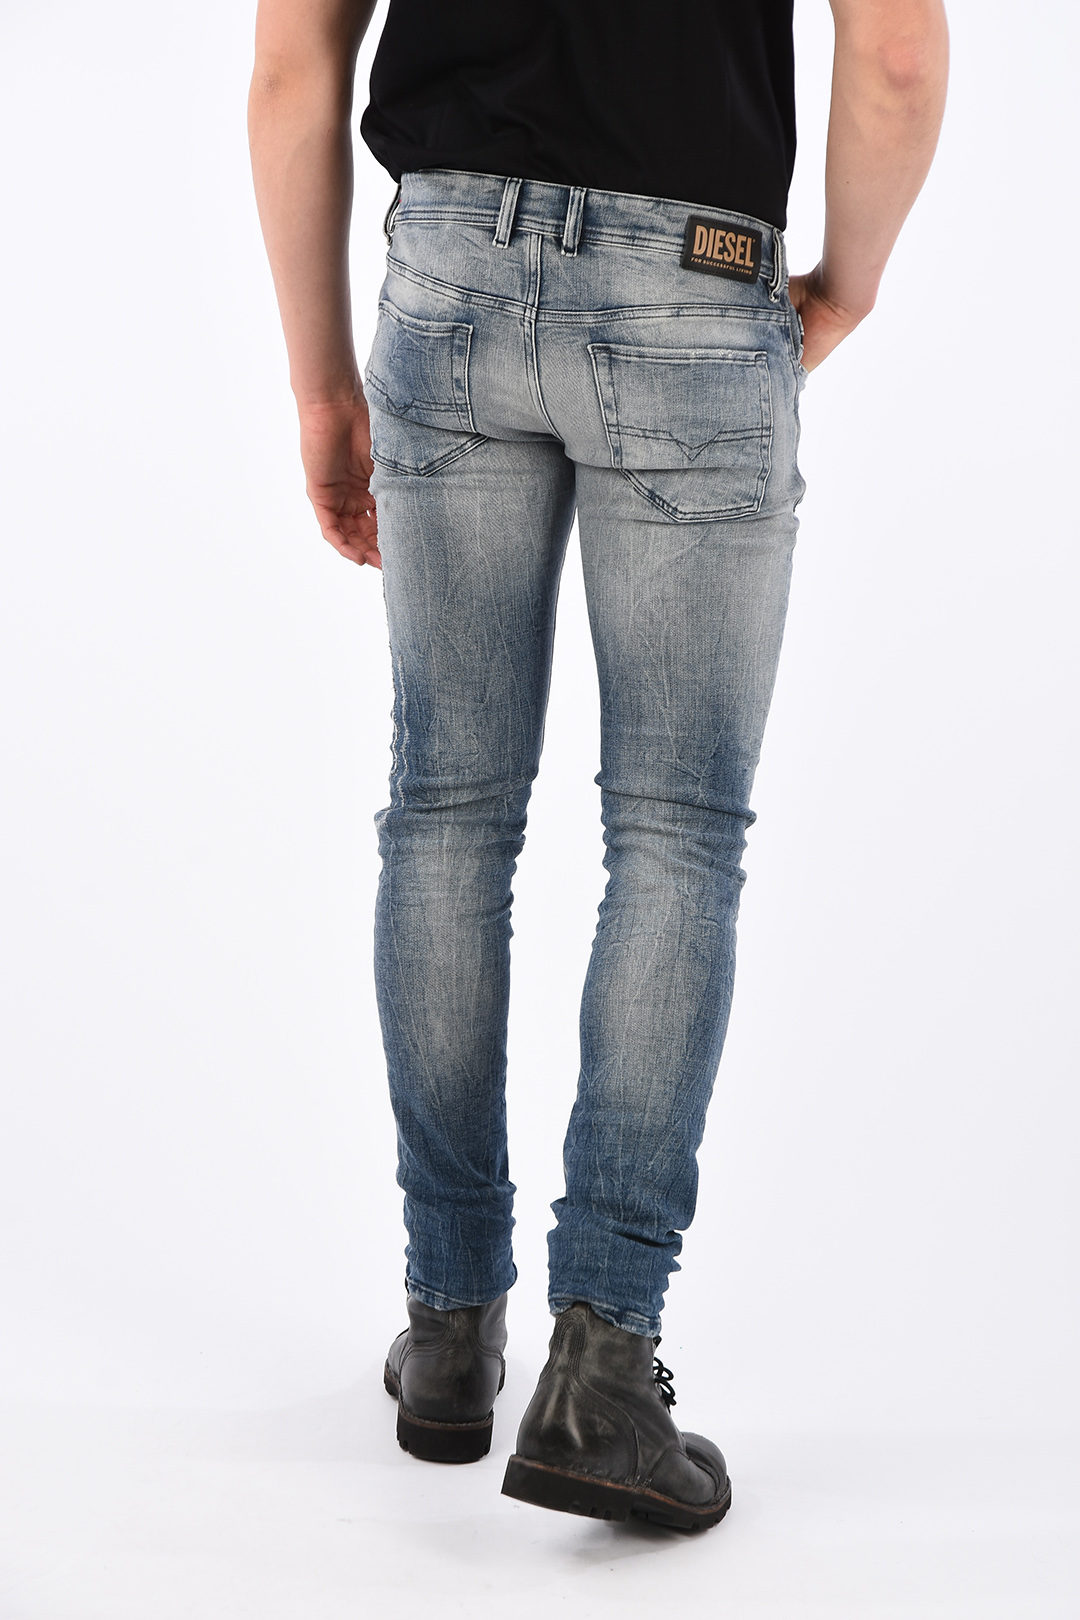 Nuchter Wiskunde Tub Diesel 16cm Vintage Effect SLEENKER-X Slim Fit Jeans L.32 men - Glamood  Outlet